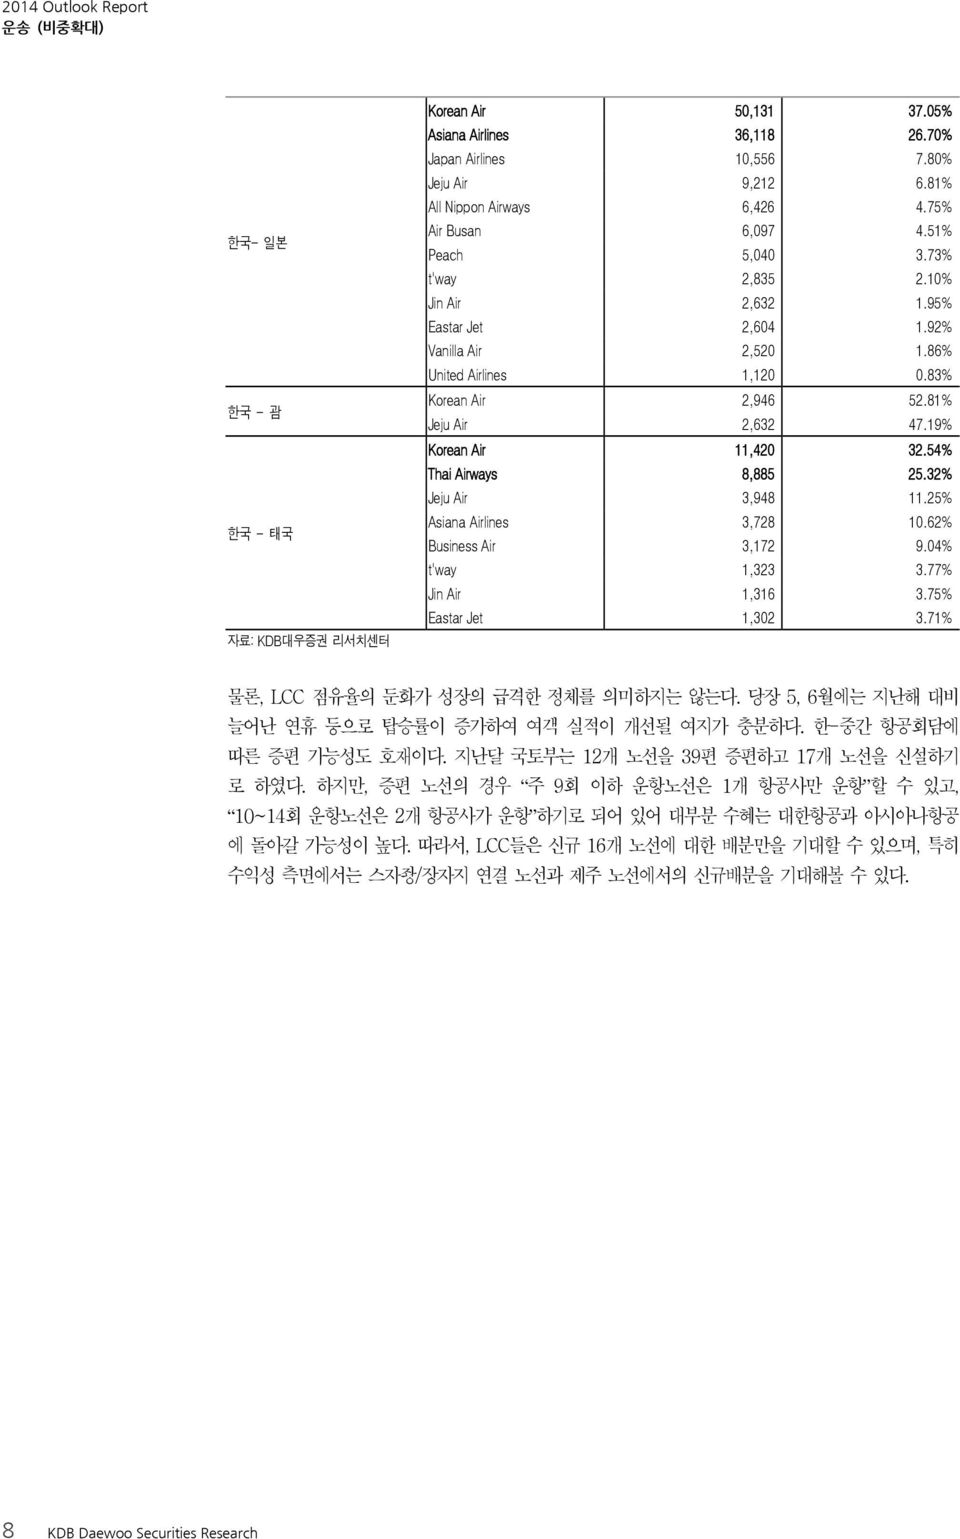 19% Korean Air 11,42 32.54% Thai Airways 8,885 25.32% Jeju Air 3,948 11.25% Asiana Airlines 3,728 1.62% Business Air 3,172 9.4% t'way 1,323 3.77% Jin Air 1,316 3.75% Eastar Jet 1,32 3.